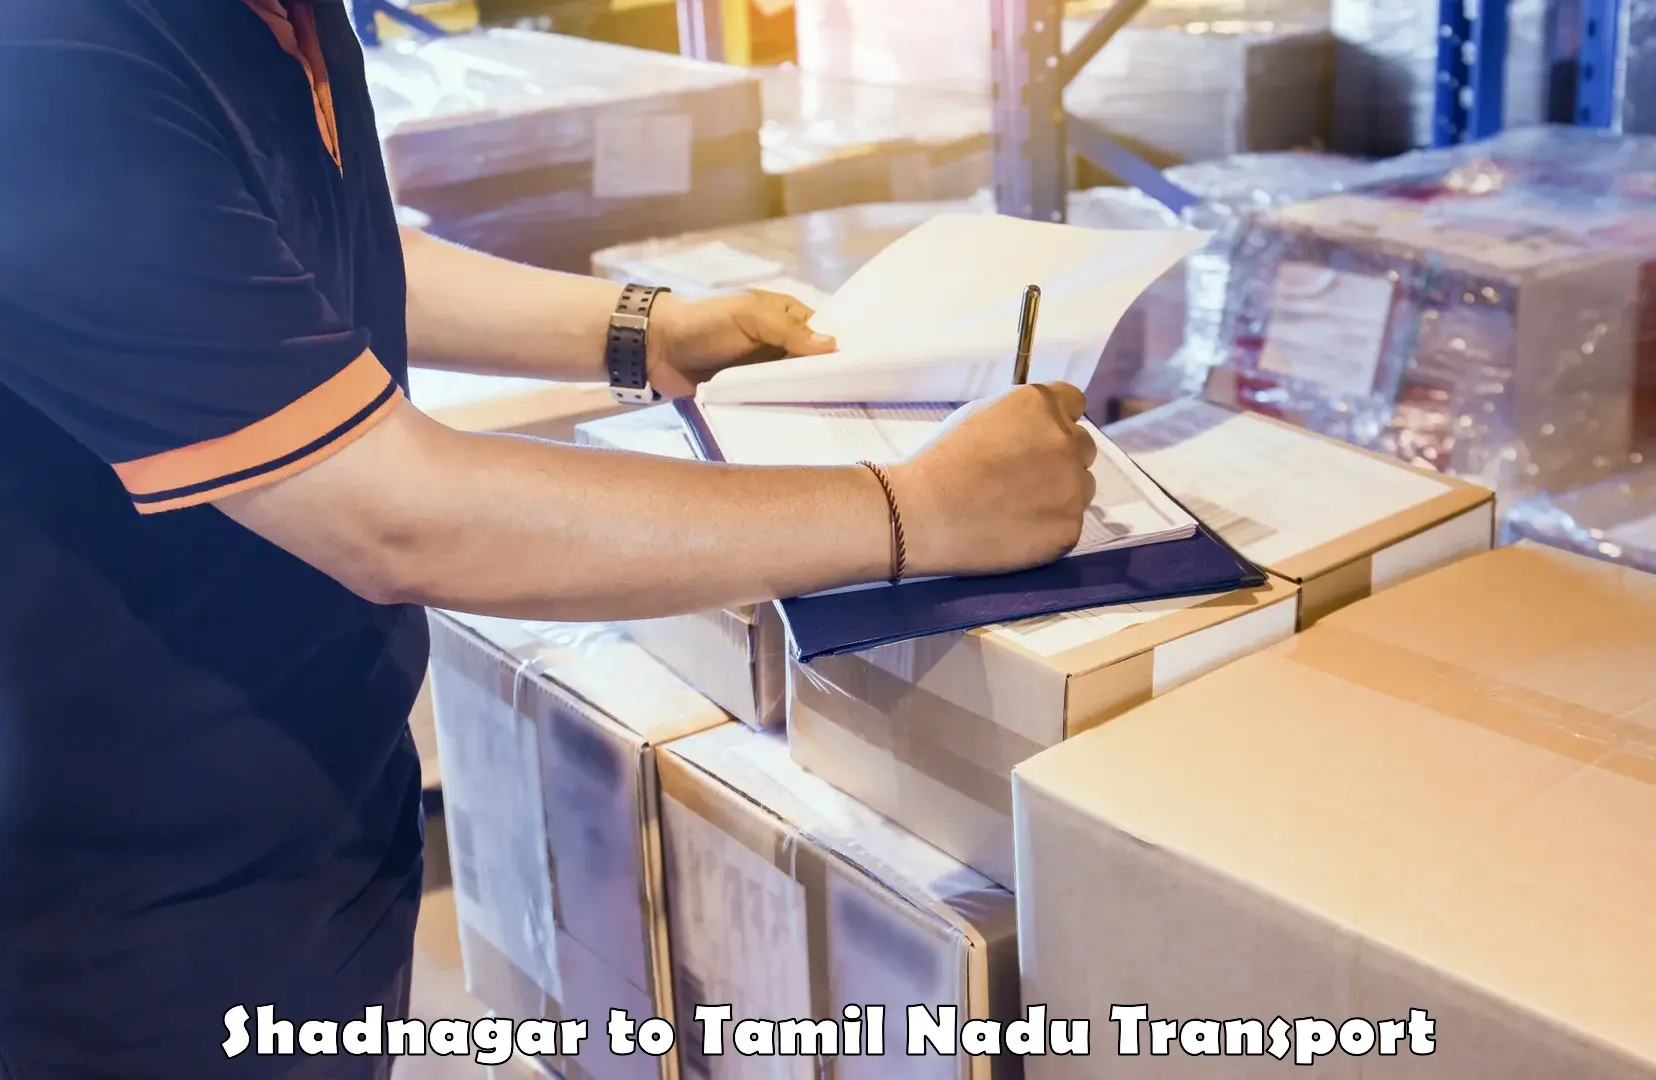 Logistics transportation services Shadnagar to Tamil Nadu